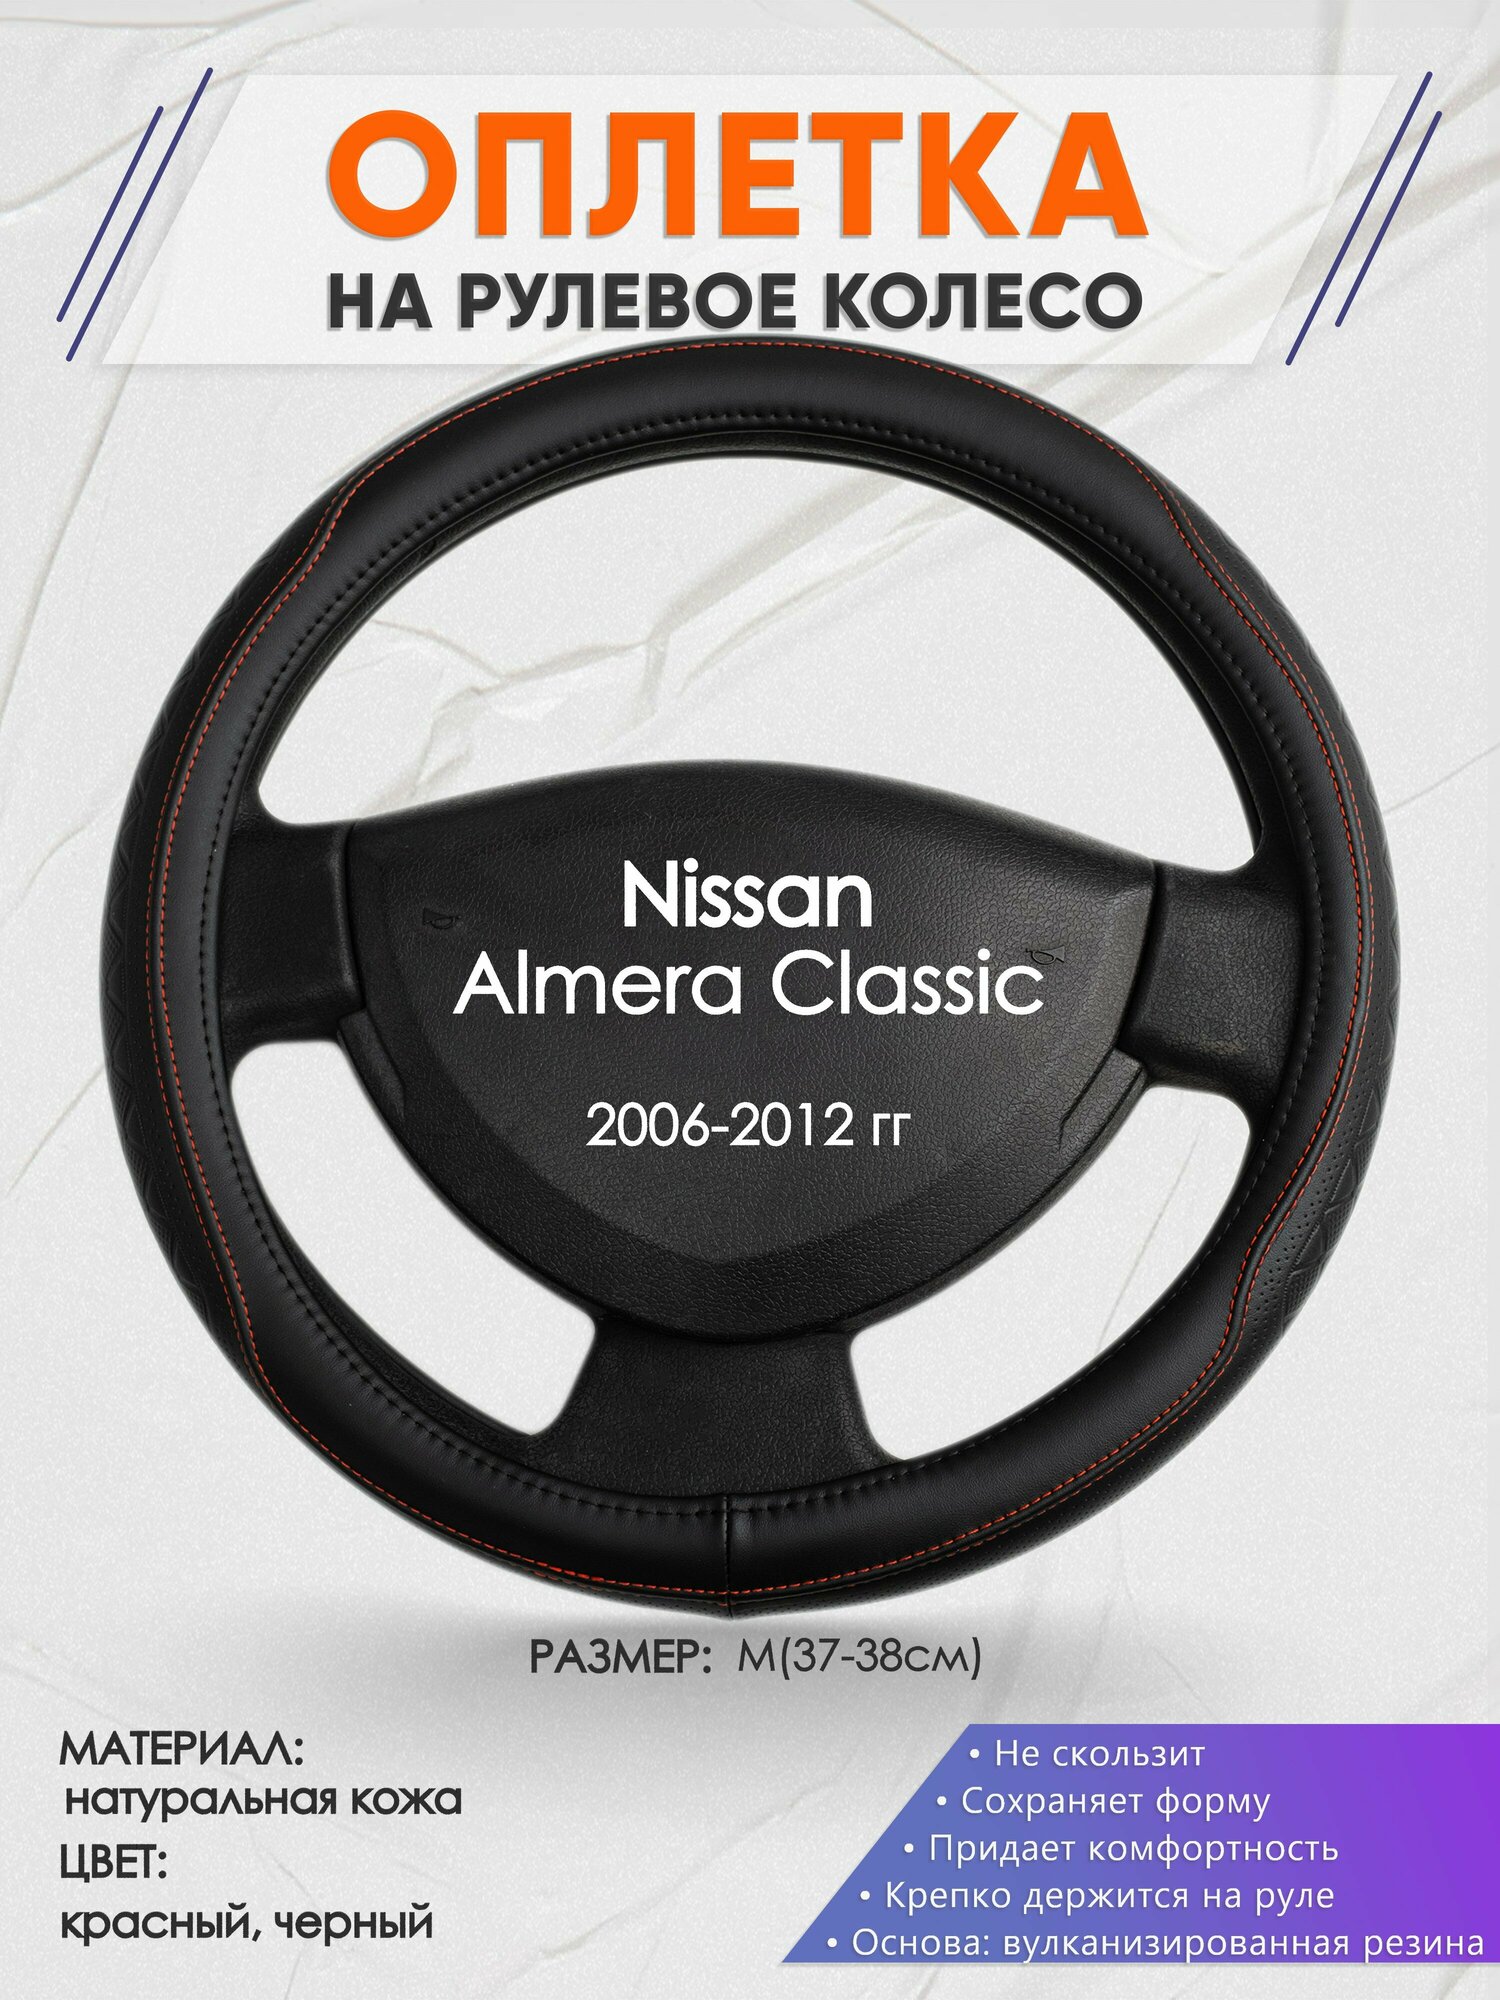 Оплетка на руль для Nissan Almera Classic(Ниссан Альмера Классик) 2006-2012, M(37-38см), Натуральная кожа 90